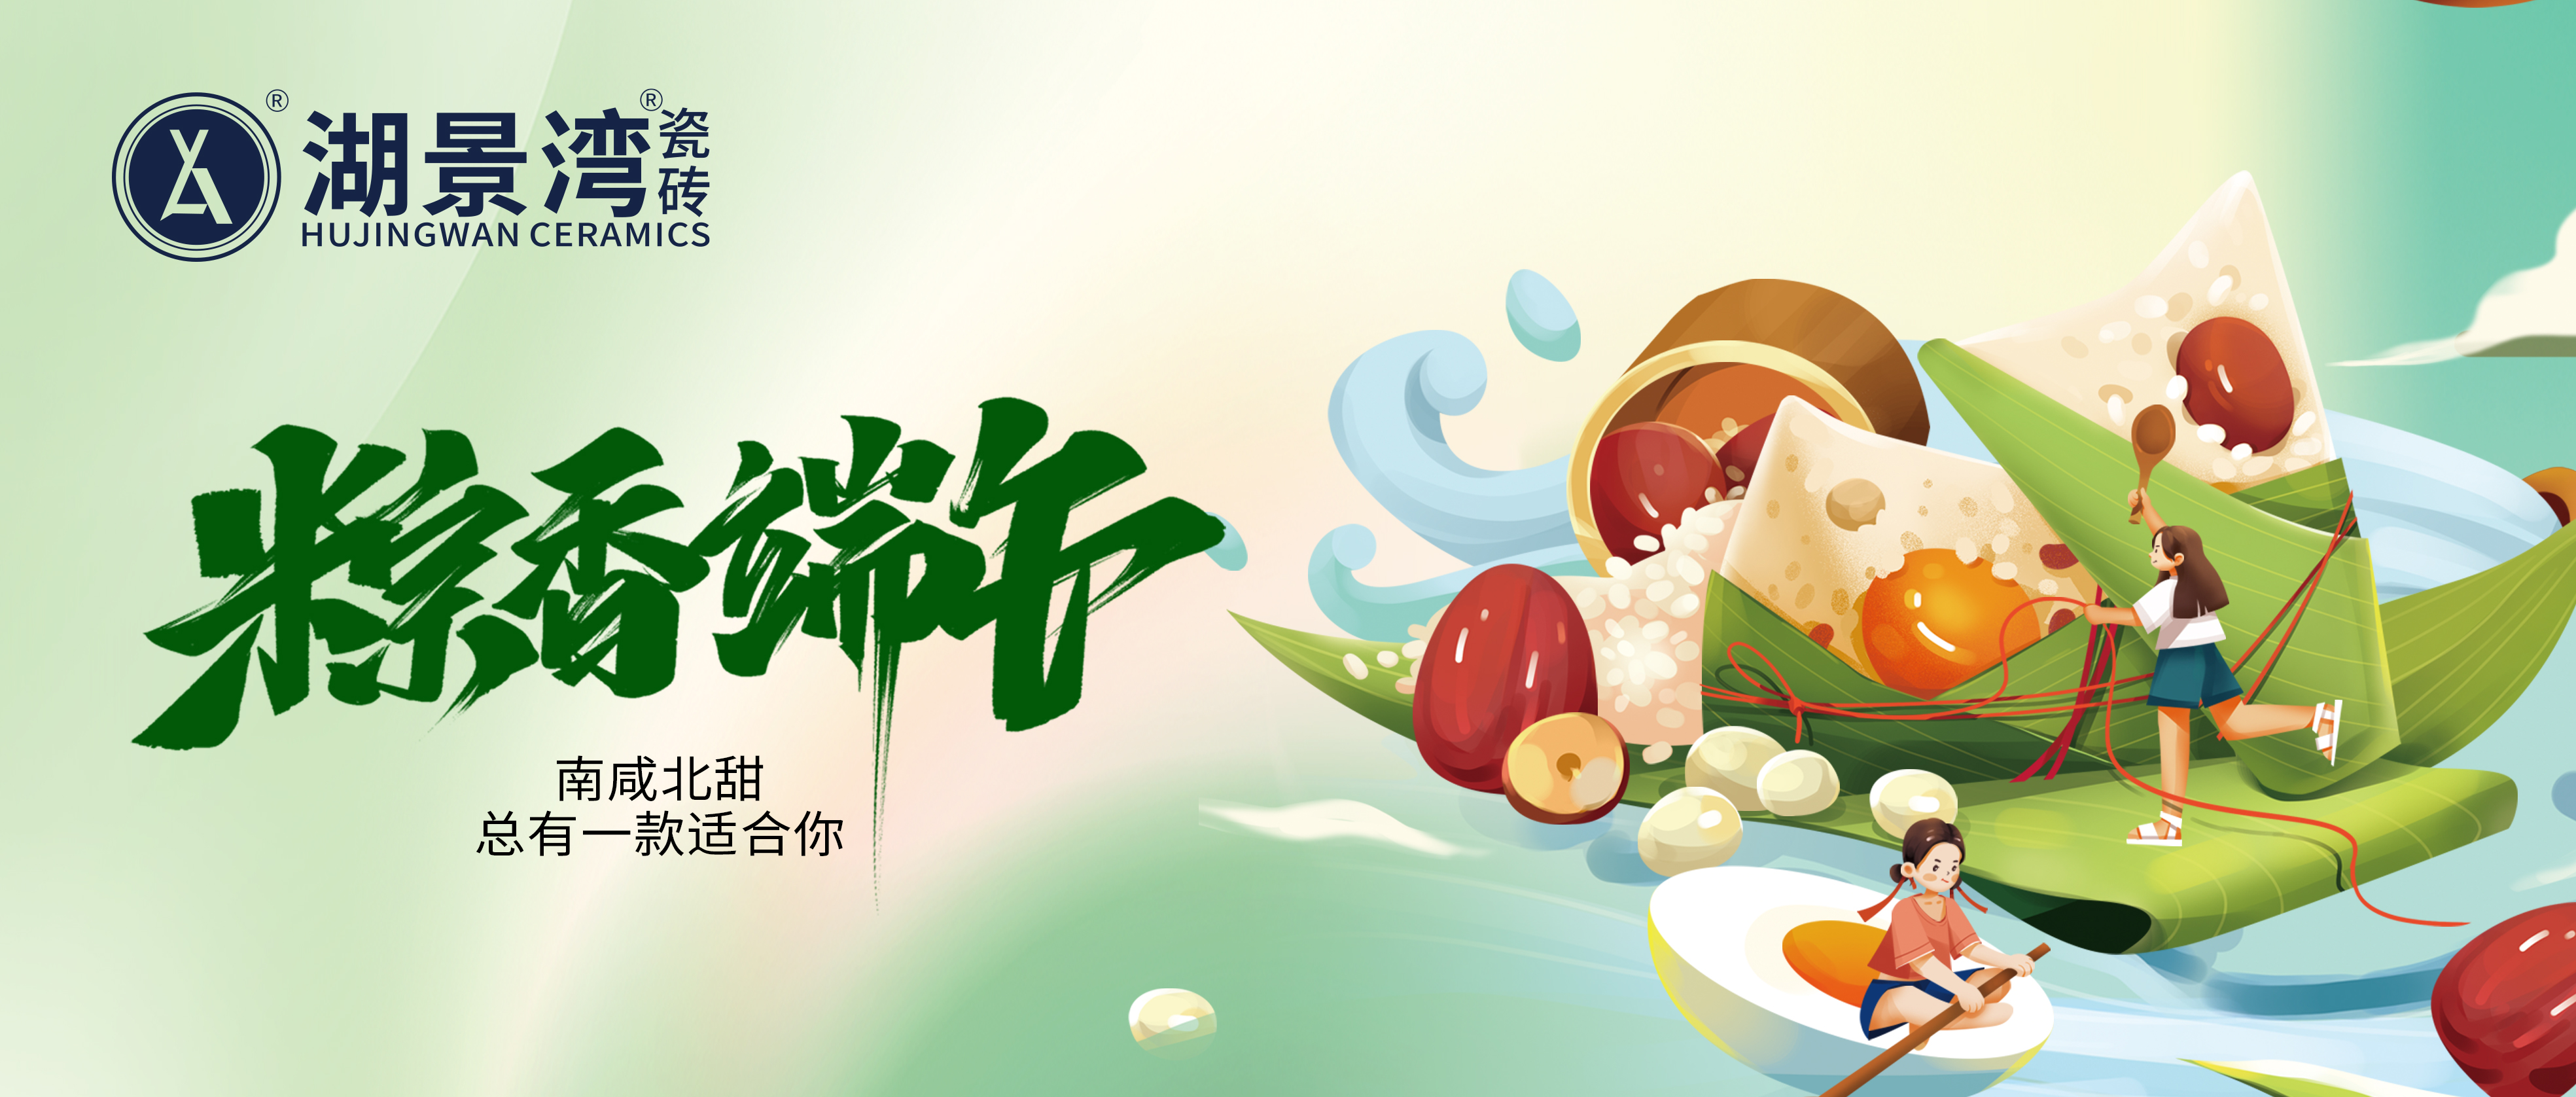 端午节 | 粽子香，喝雄黄。湖景湾瓷砖祝您端午安康！